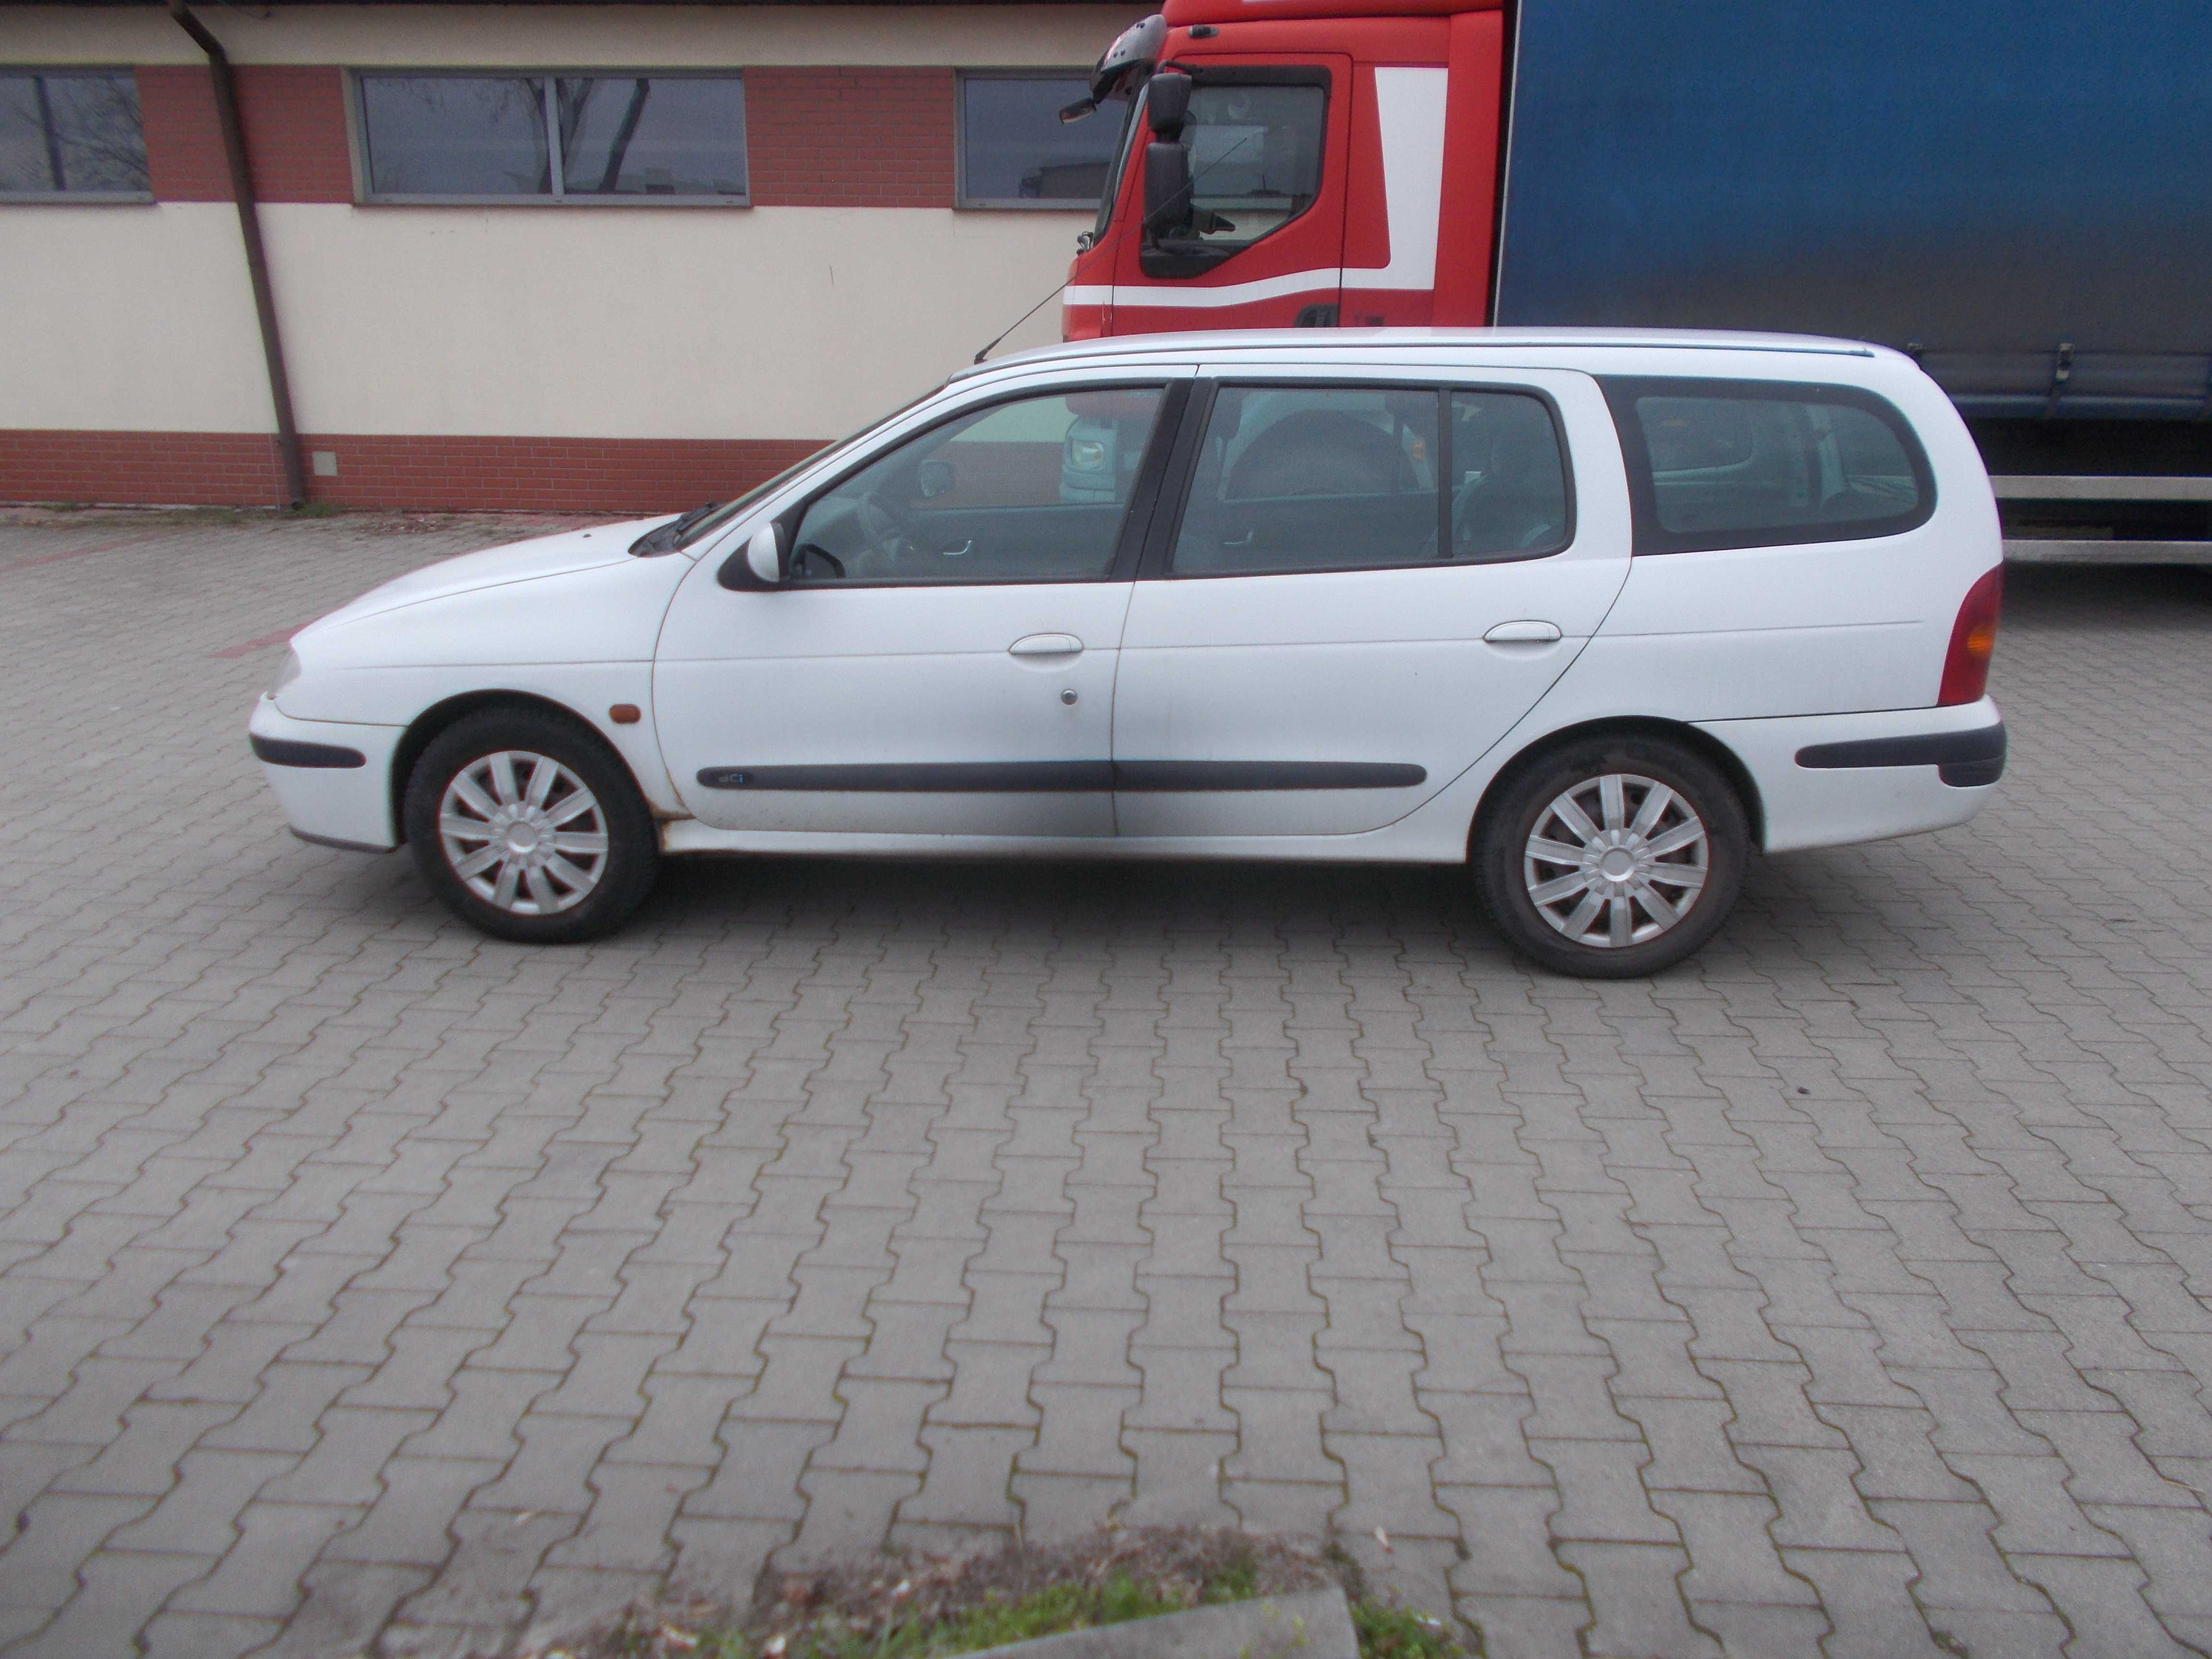 Drzwi prawe tylne tył Renault Megane Kombi białe demontaż